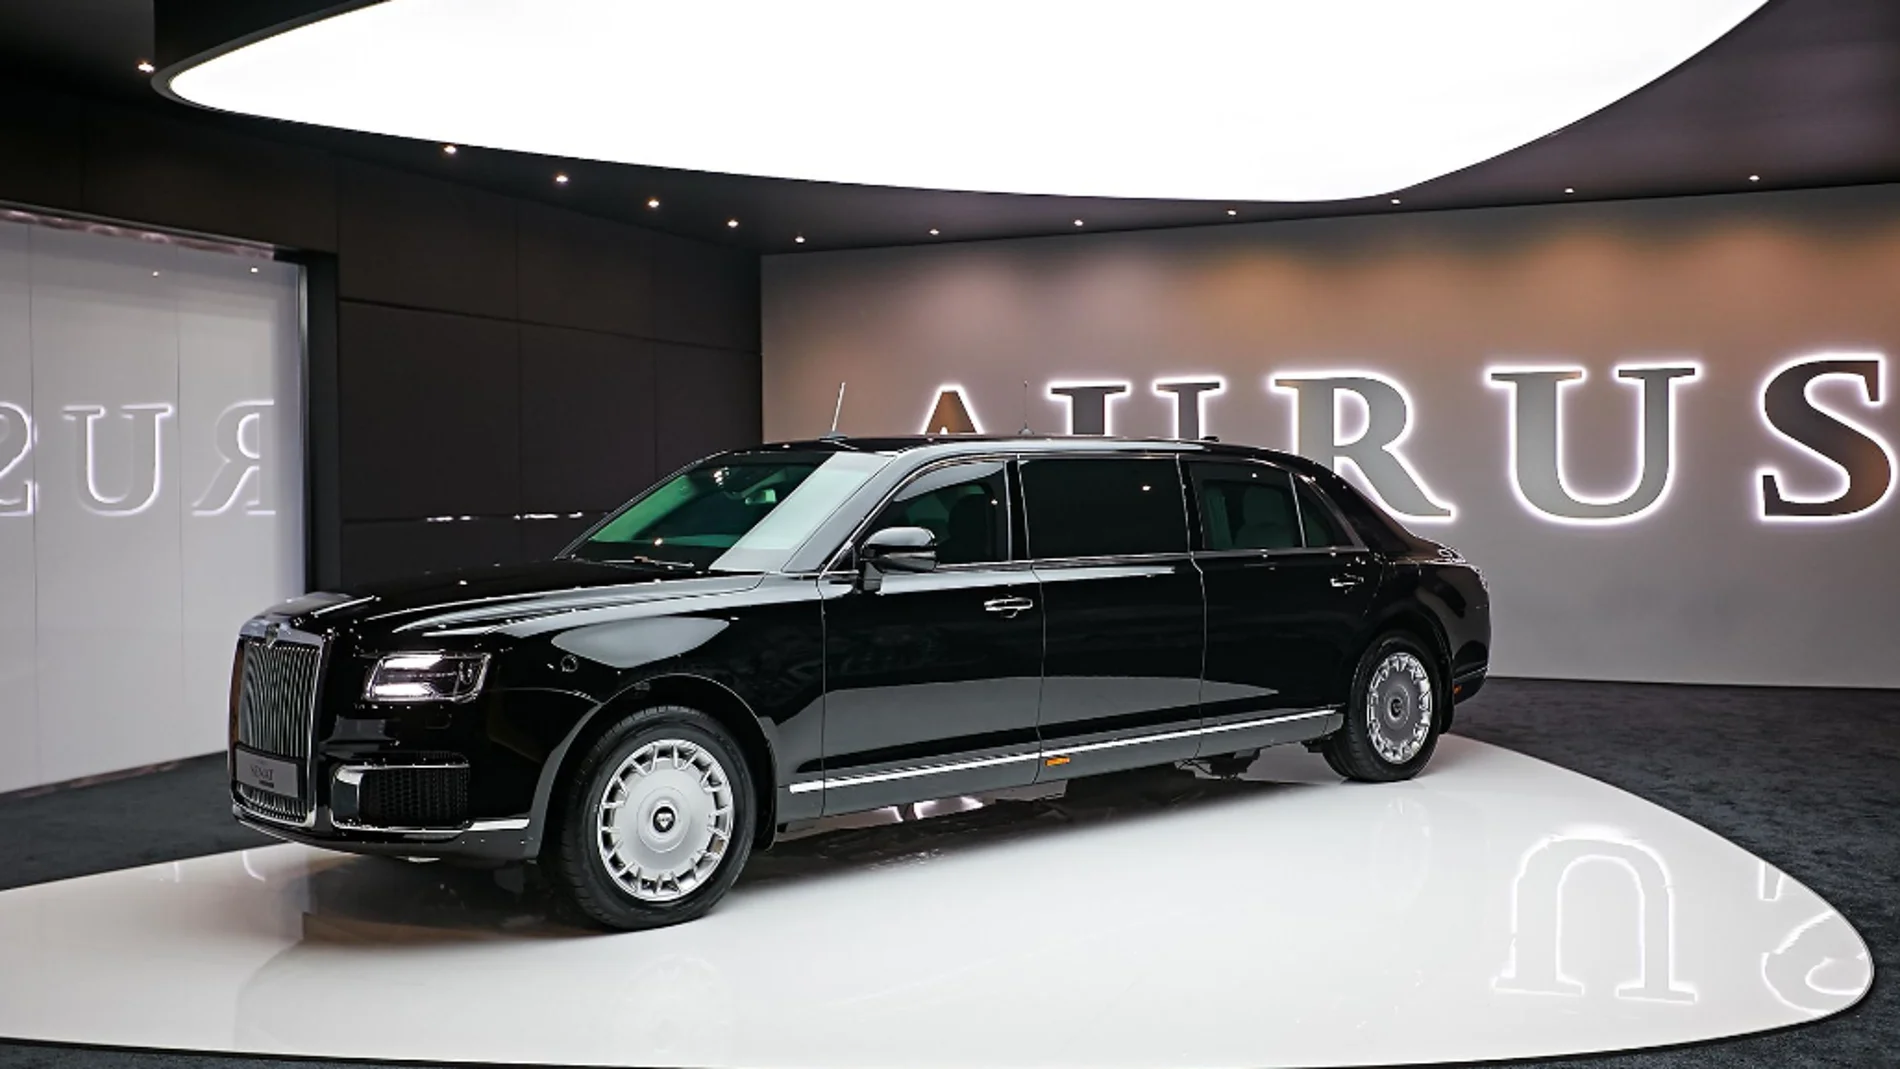 Un coche de lujo ruso Aurus parecido al que tiene el presidente Putin